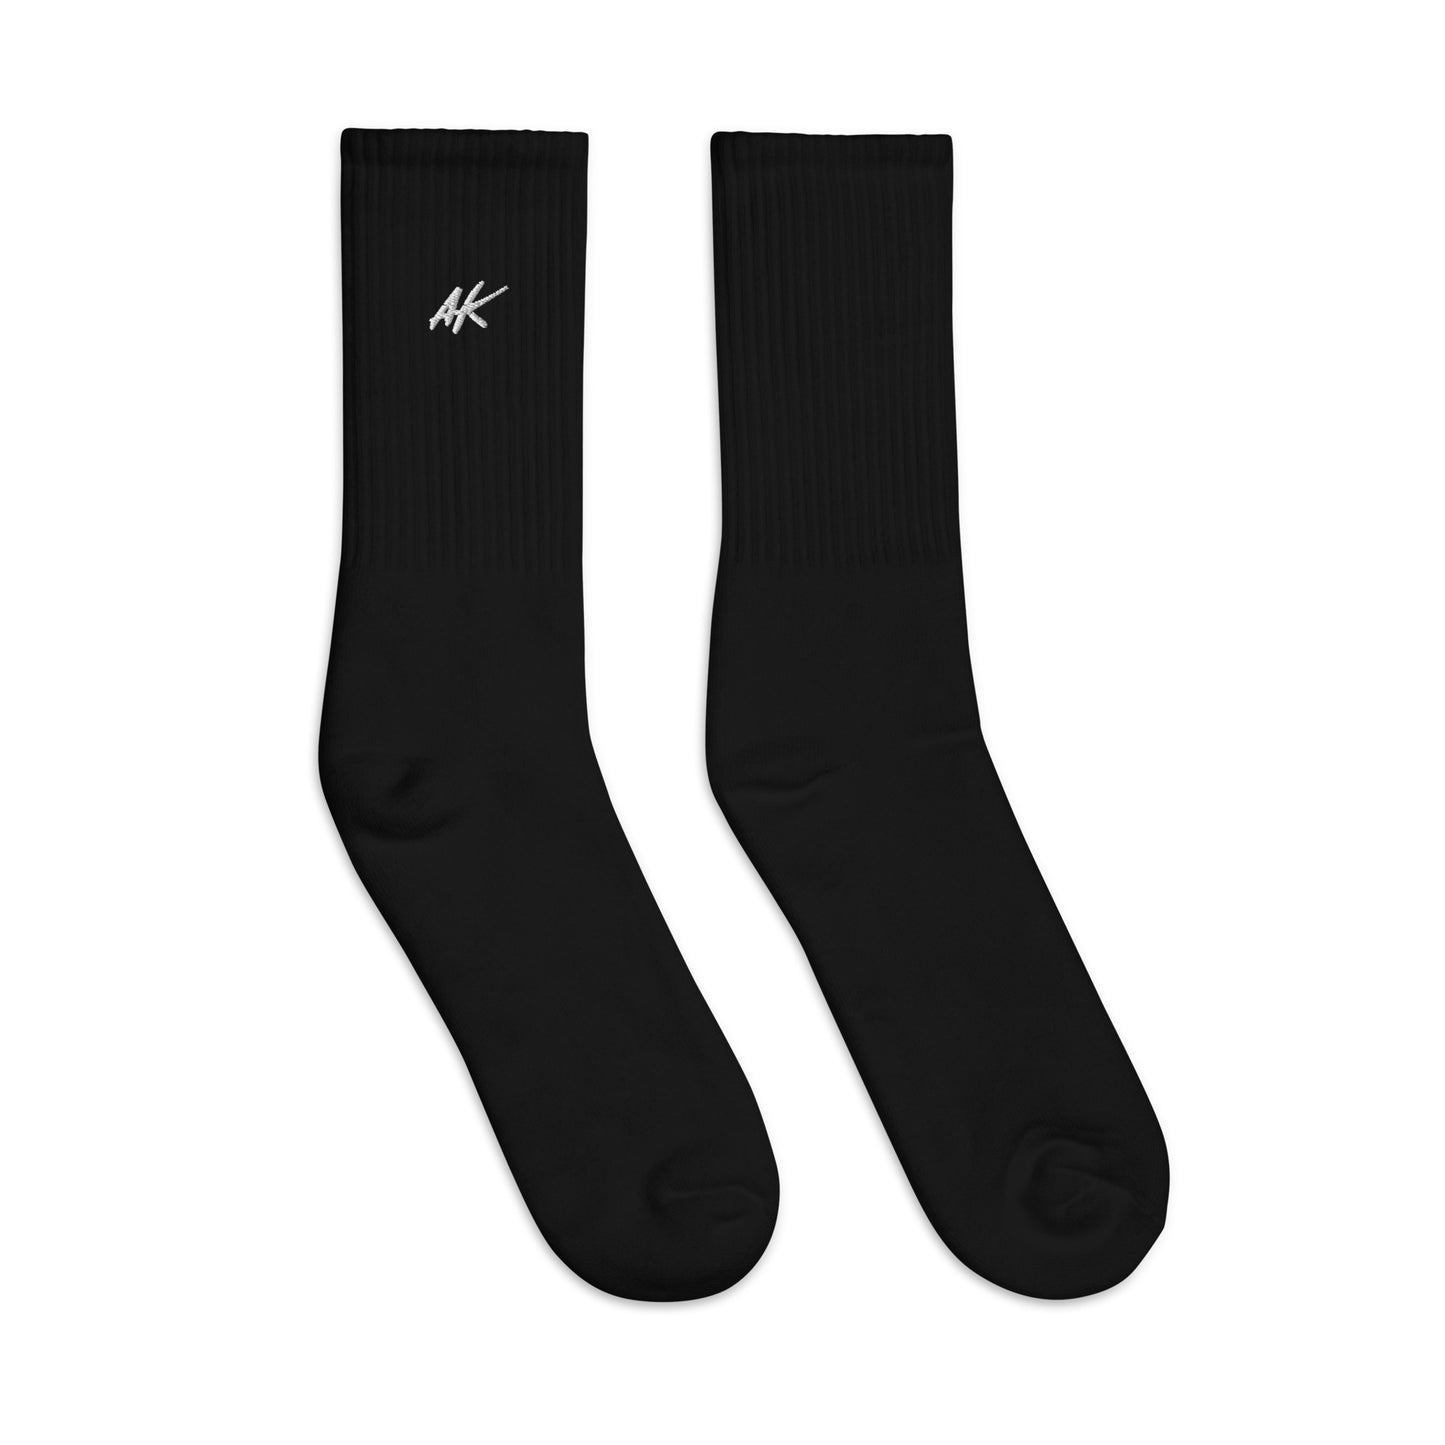 AK socks (white)